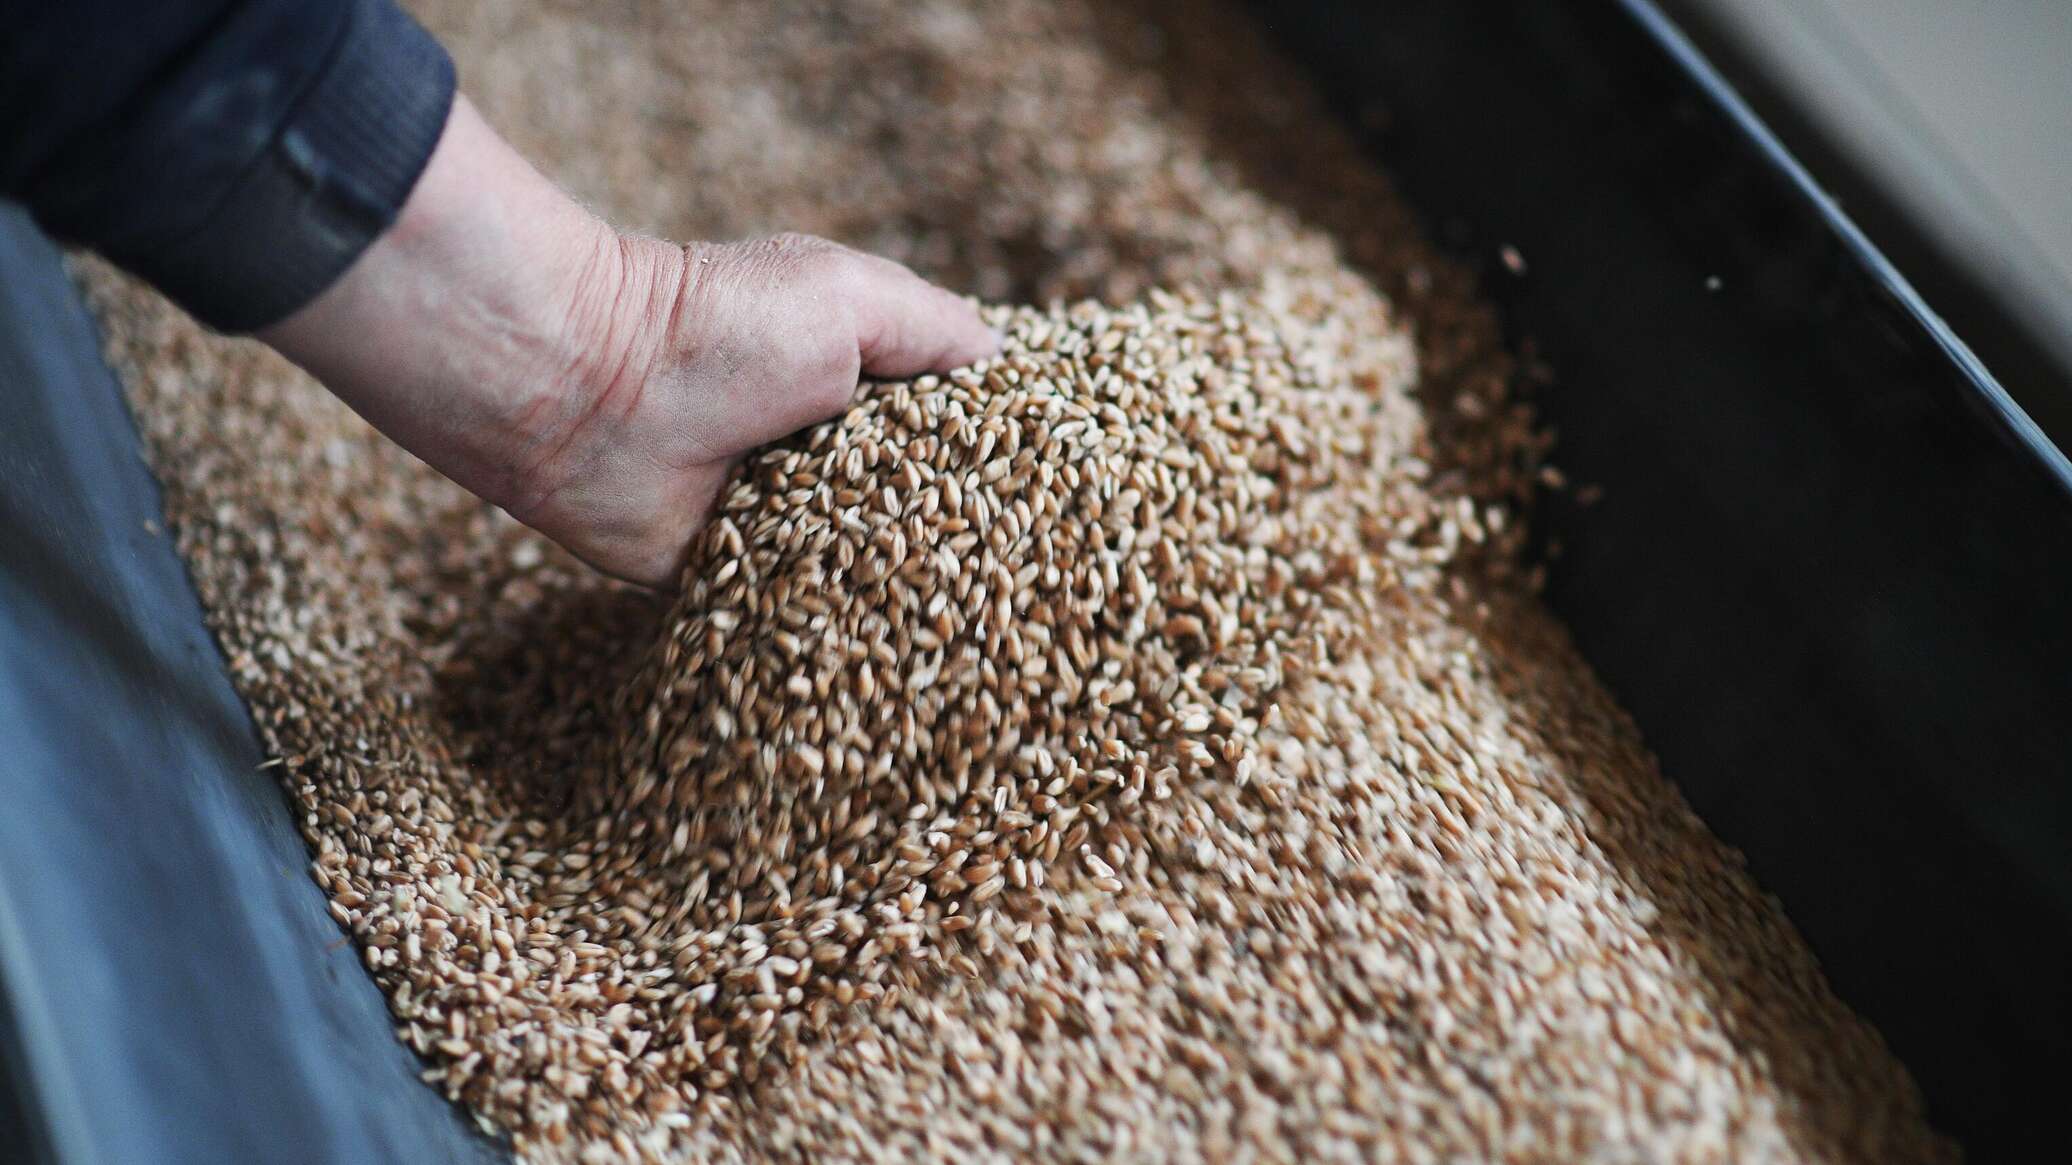 Правительство выделит дополнительный объем дизтоплива для сушки зерна по удешевленной цене